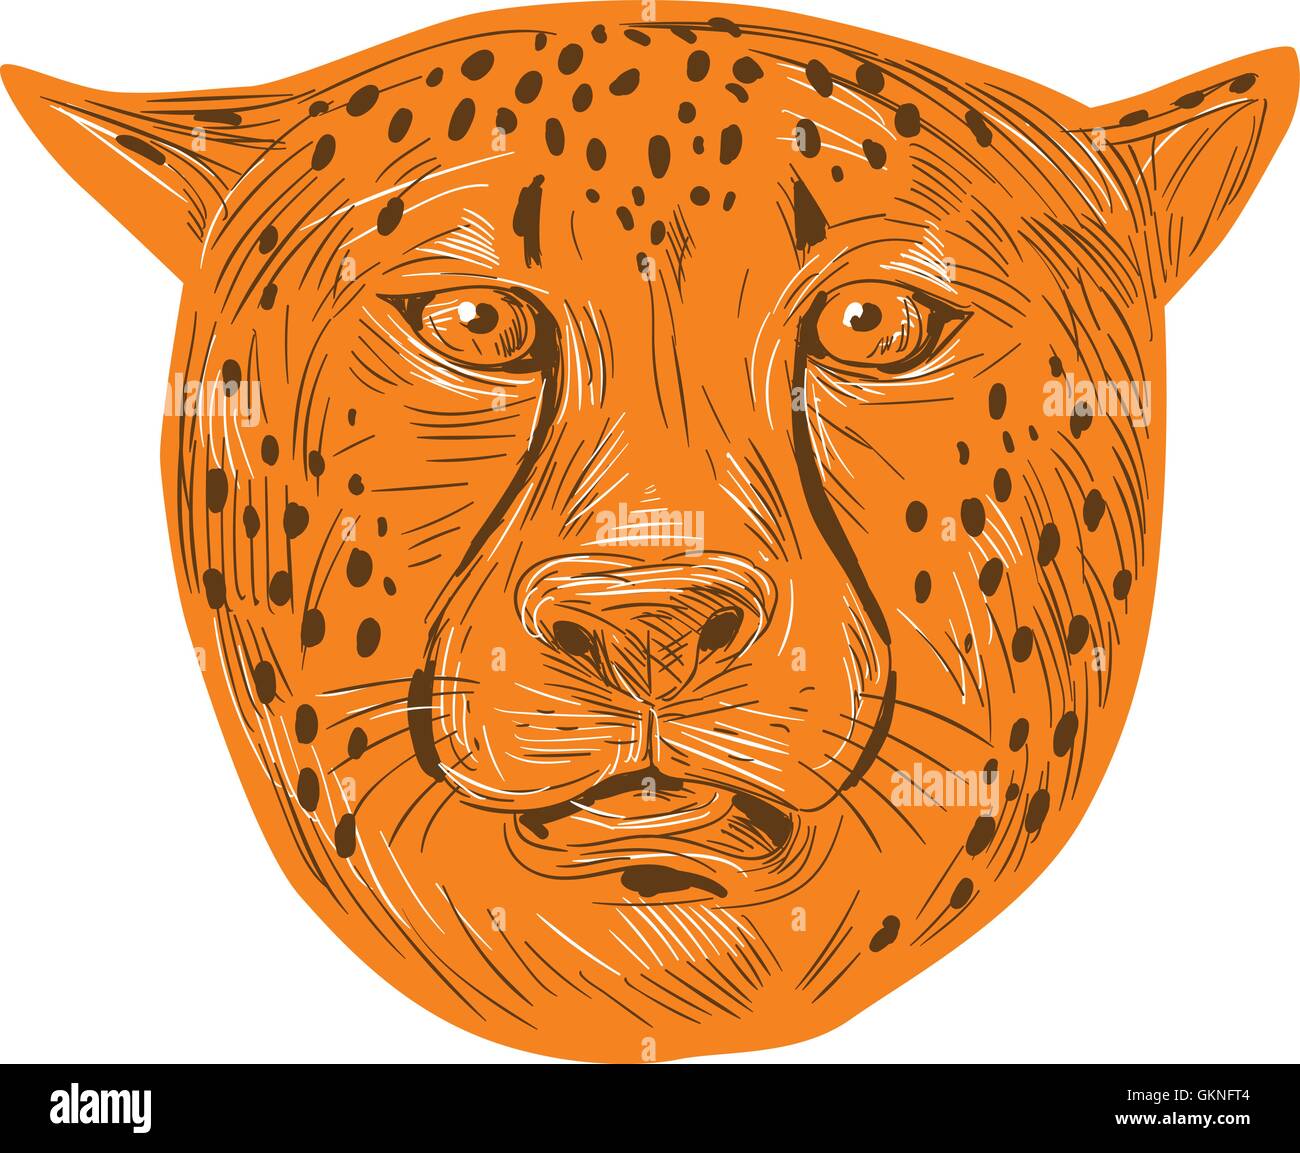 Style croquis dessin illustration d'une tête de guépard face à l'avant fixé sur un fond blanc. Illustration de Vecteur